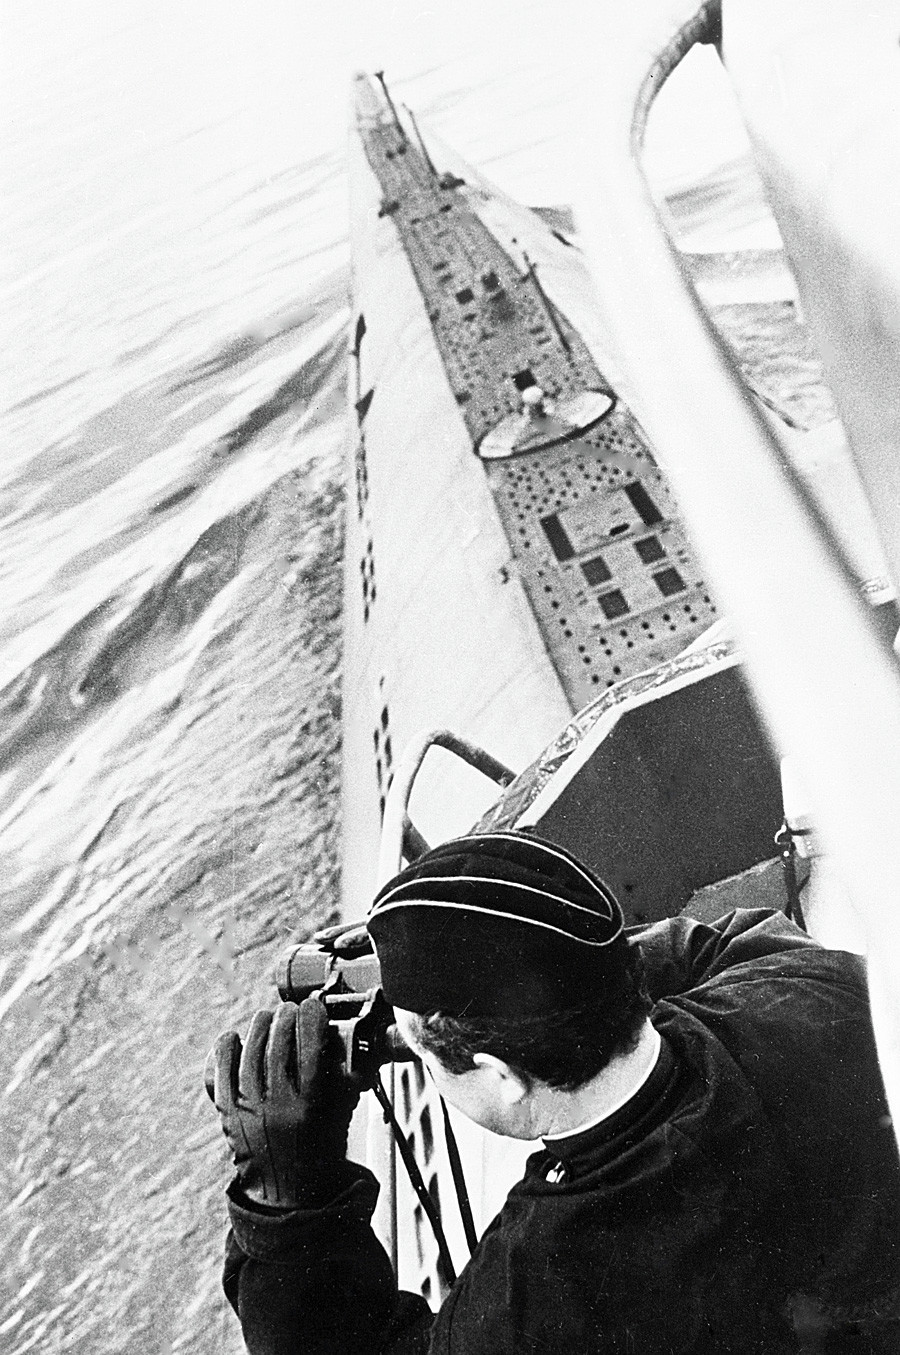 Sovietski zapovjednik podmornice skenira horizont 1968. godine